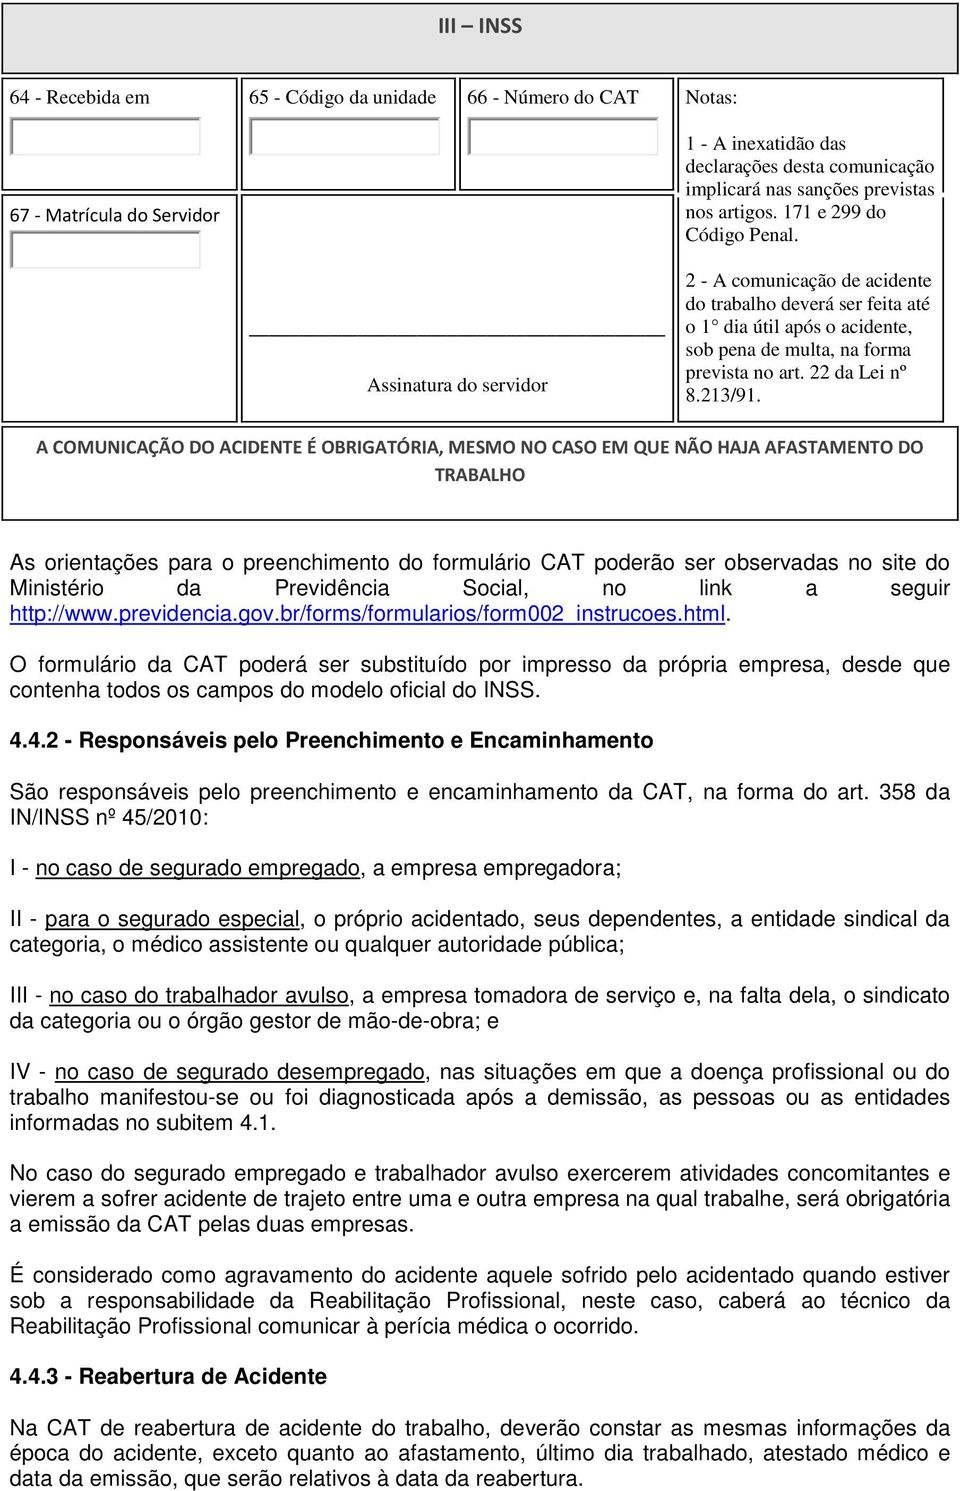 As orientações para o preenchimento do formulário CAT poderão ser observadas no site do Ministério da Previdência Social, no link a seguir http://www.previdencia.gov.